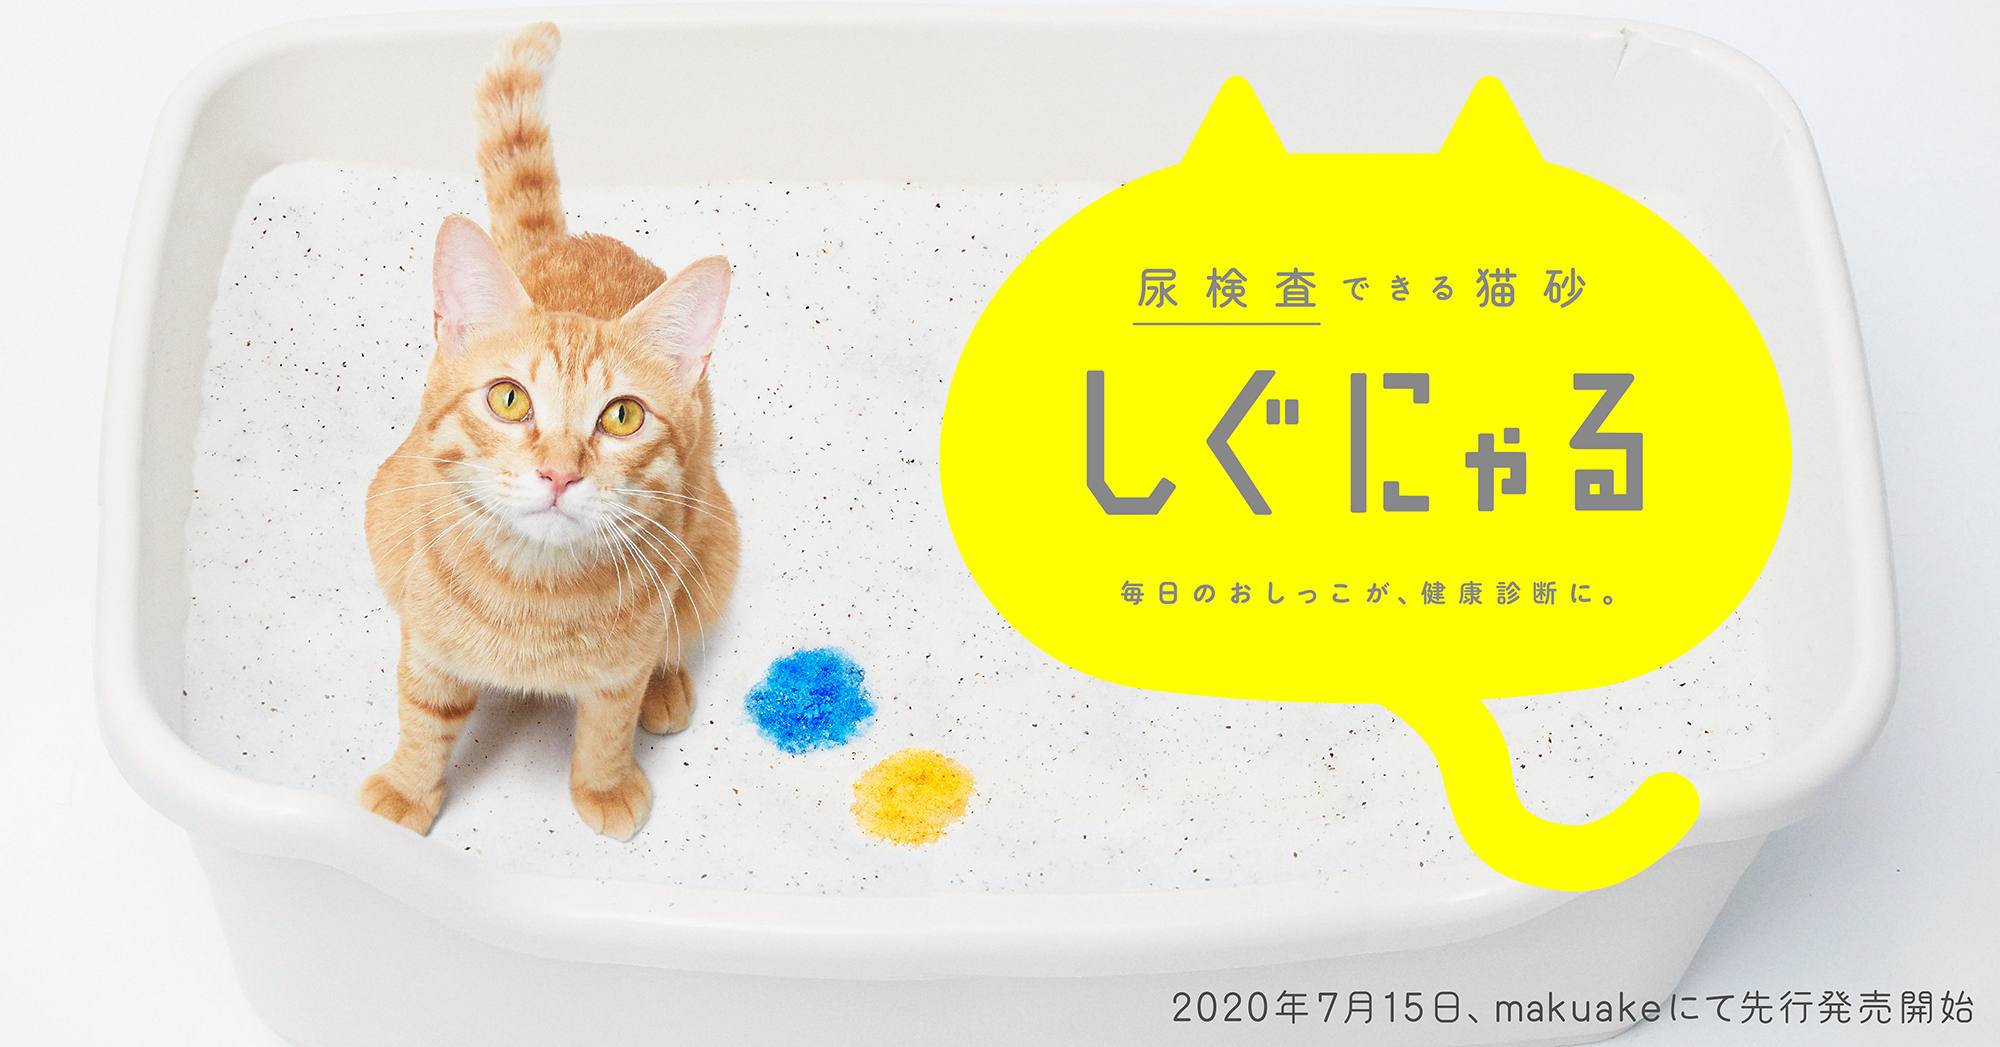 愛猫の変化を早期発見 毎日のおしっこが 健康管理に 尿の状態により5色に変化する猫砂 しぐにゃる Makuakeにて7月15日先行販売開始 株式会社スリーズのプレスリリース